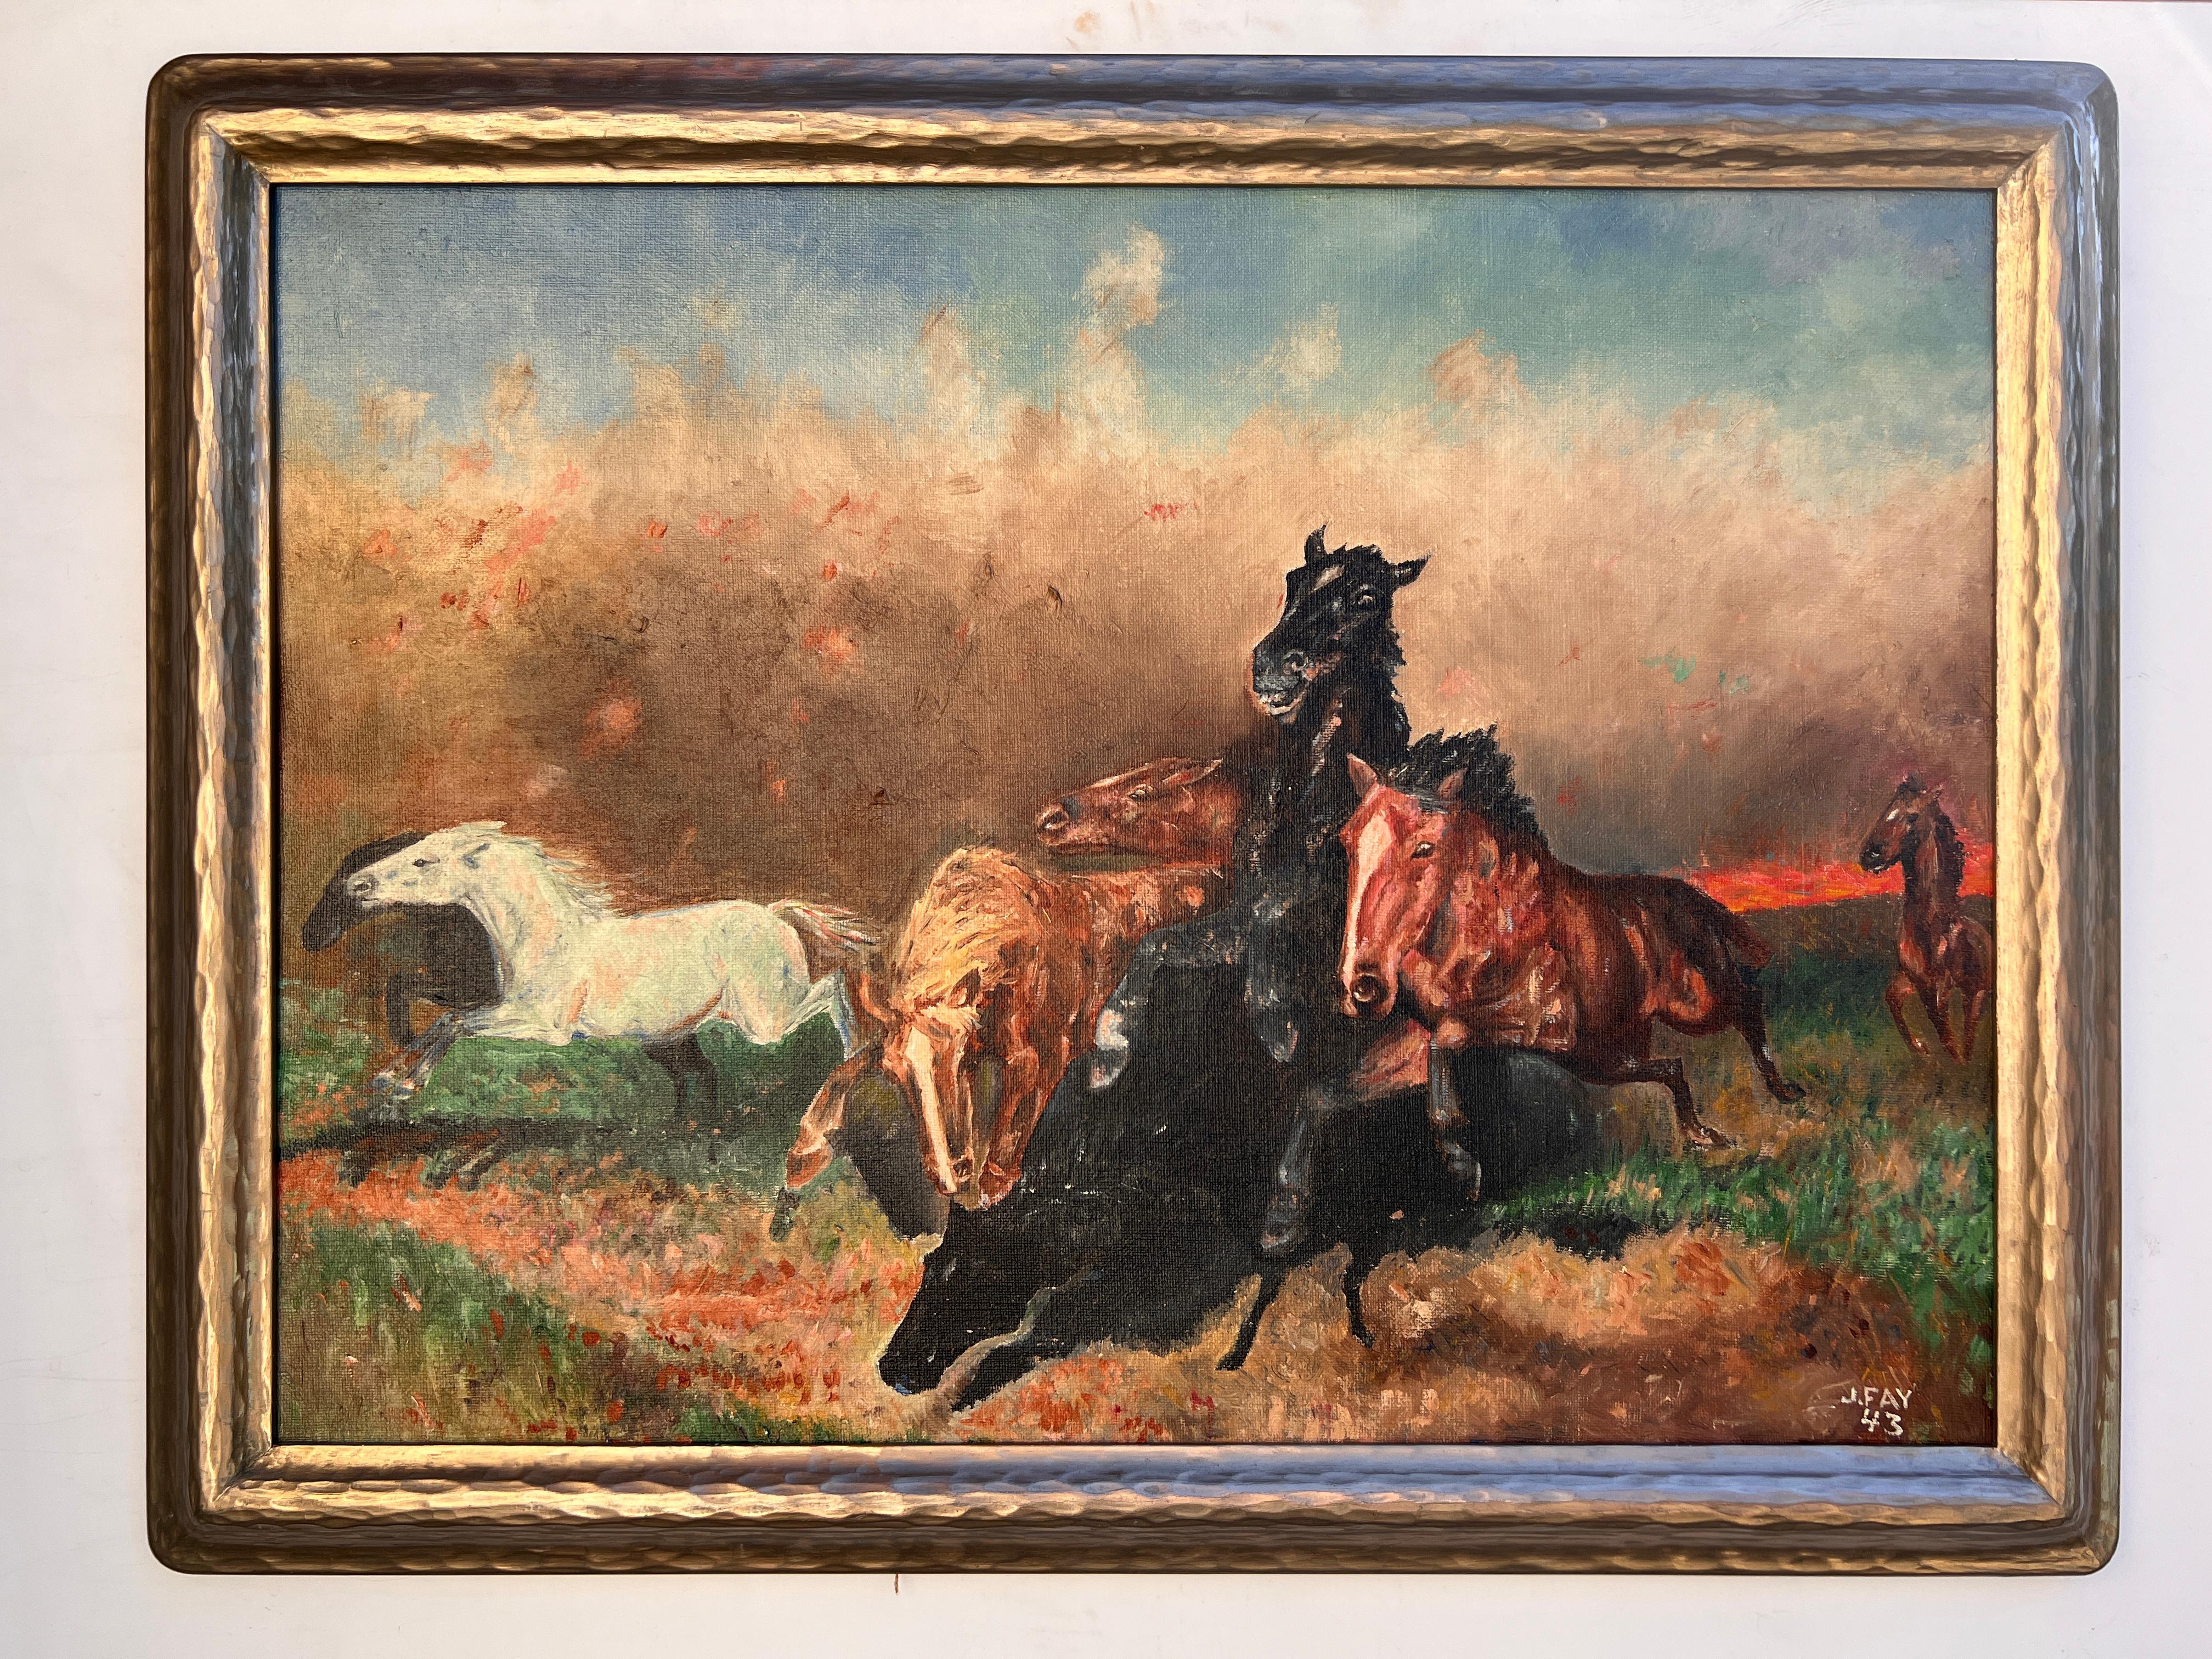 J.FAY 1943 Vintage Original-Ölgemälde auf Leinwand, Herd von Wildpferden, gerahmt – Painting von J.Fay